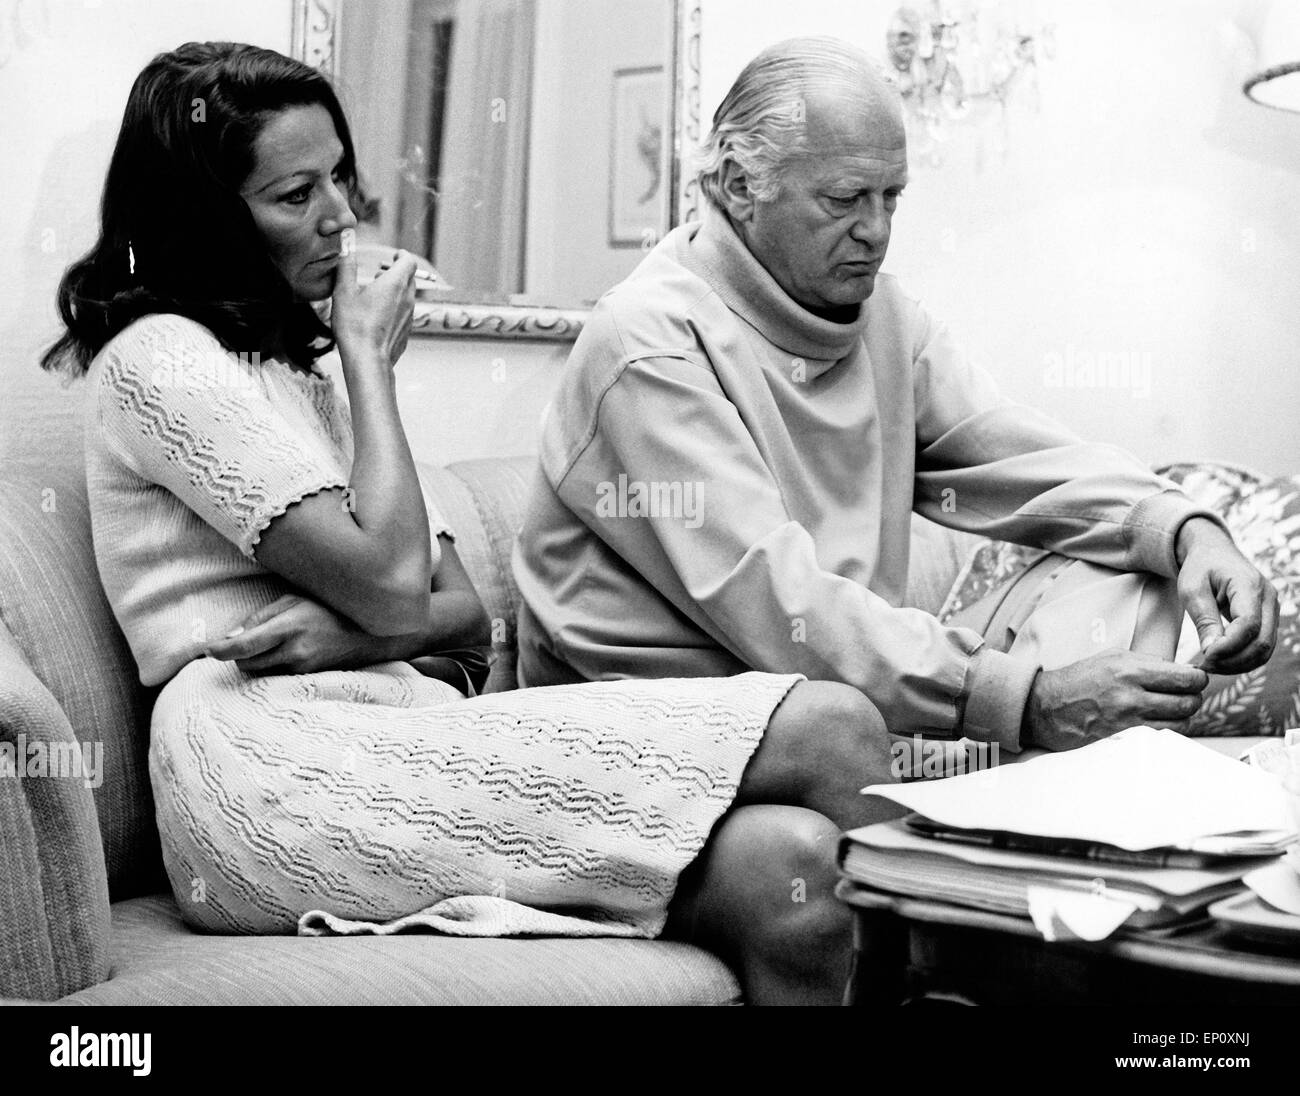 Deutscher Wis Curd Jürgens und seine Frau Simone bei einem Interview einer Homestory, Deutschland 1970er Jahre. Germ Stockfoto